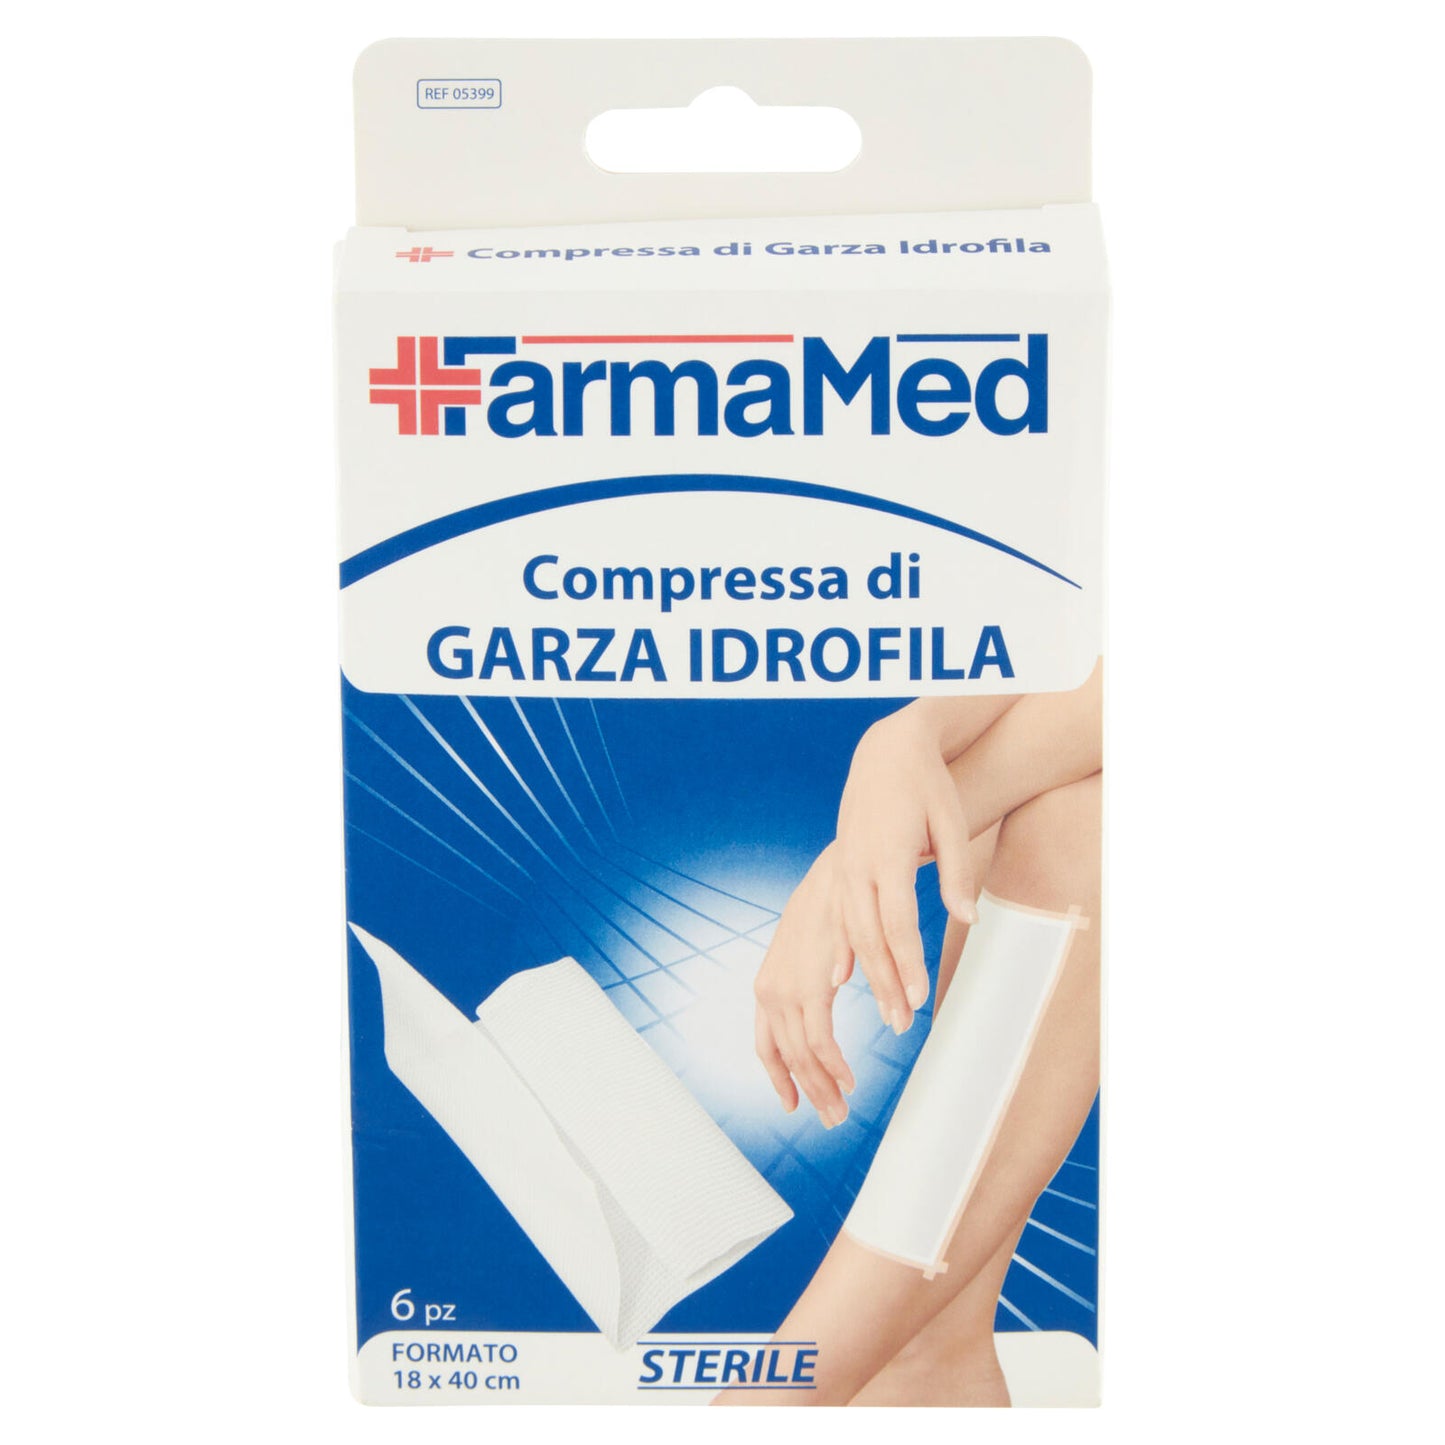 FarmaMed Compressa di Garza Idrofila Formato 18 x 40 cm 6 pz